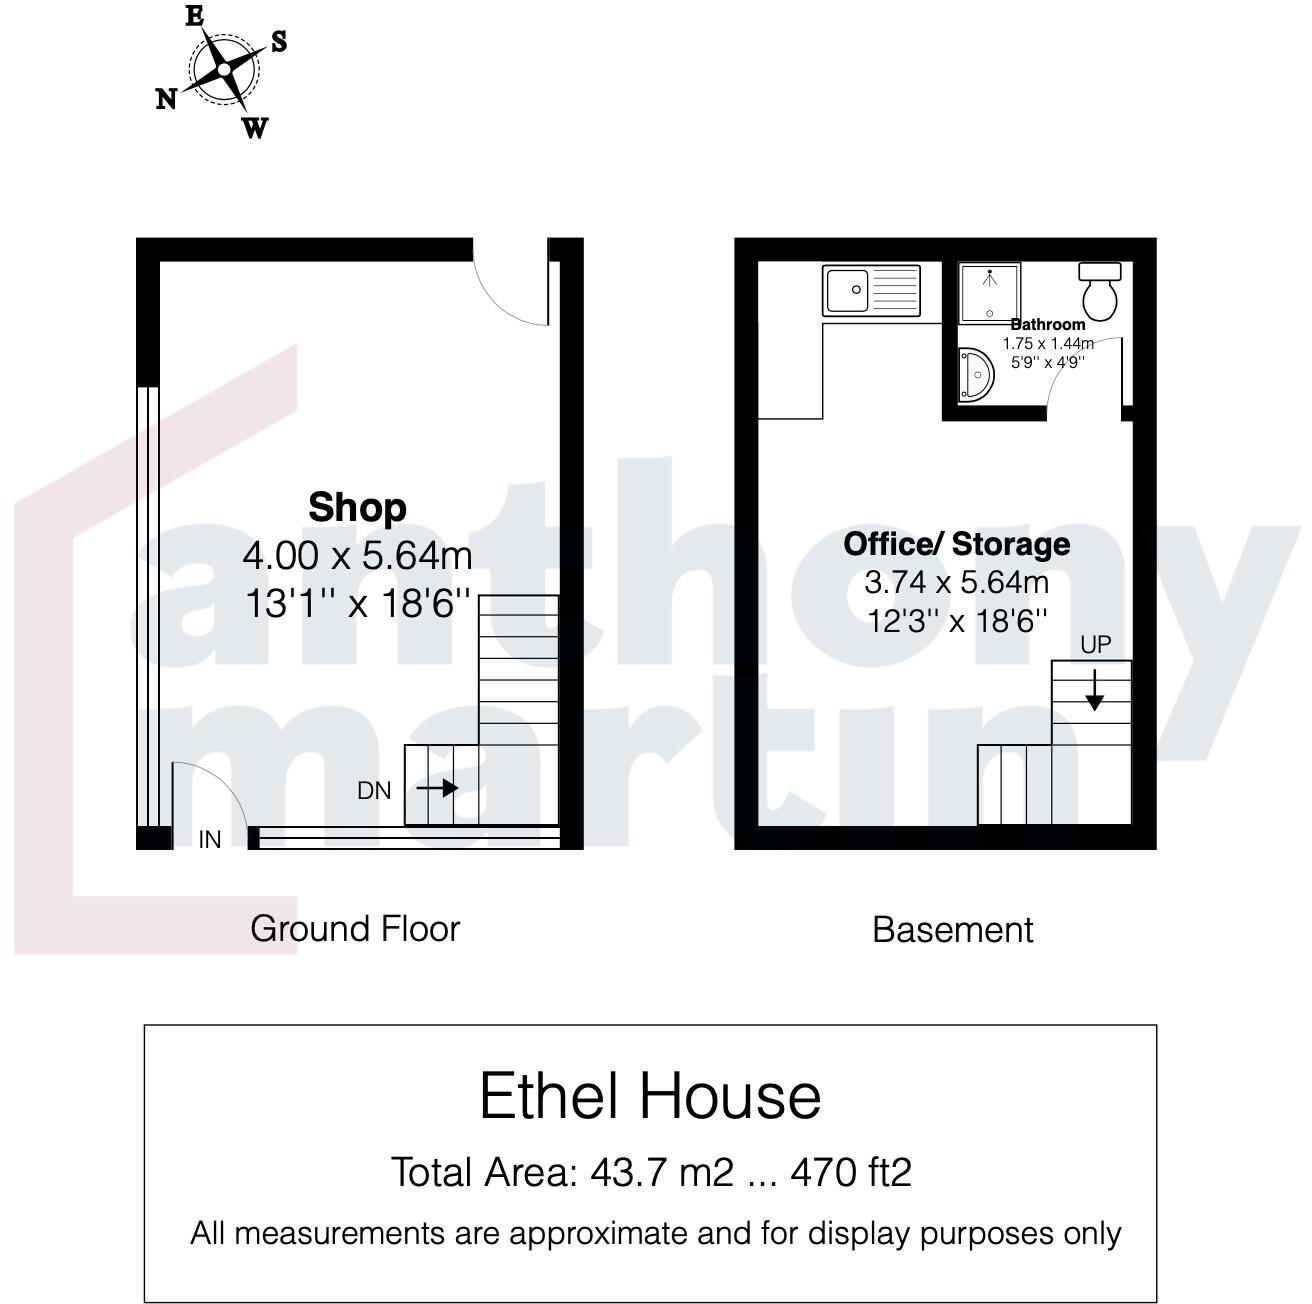 Shop / Office / Storage Floorplan